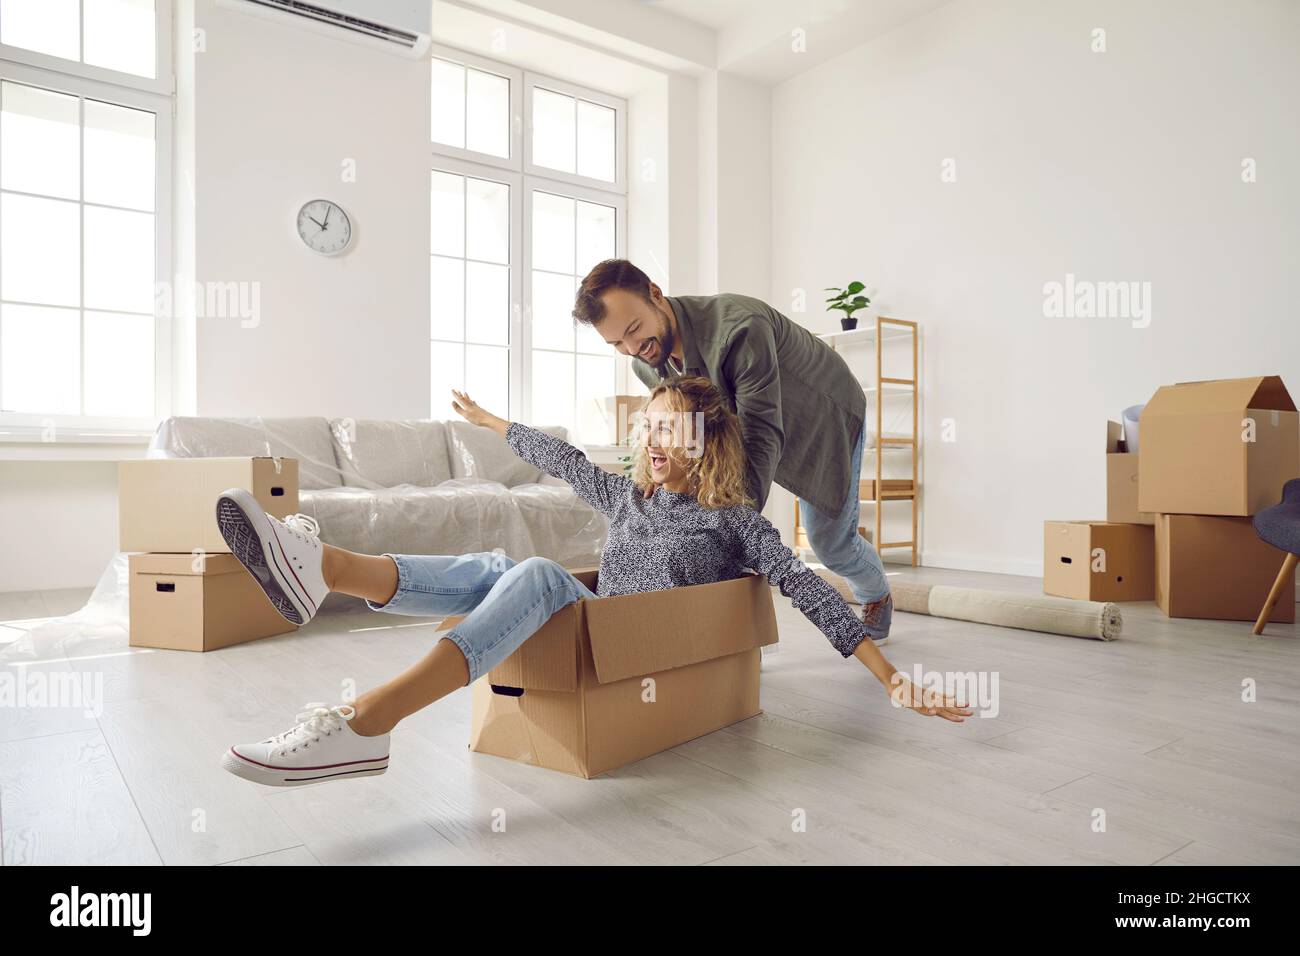 Glückliches junges Ehepaar, das am Umzugstag mit Pappkartons in einem neuen Zuhause Spaß hat. Stockfoto